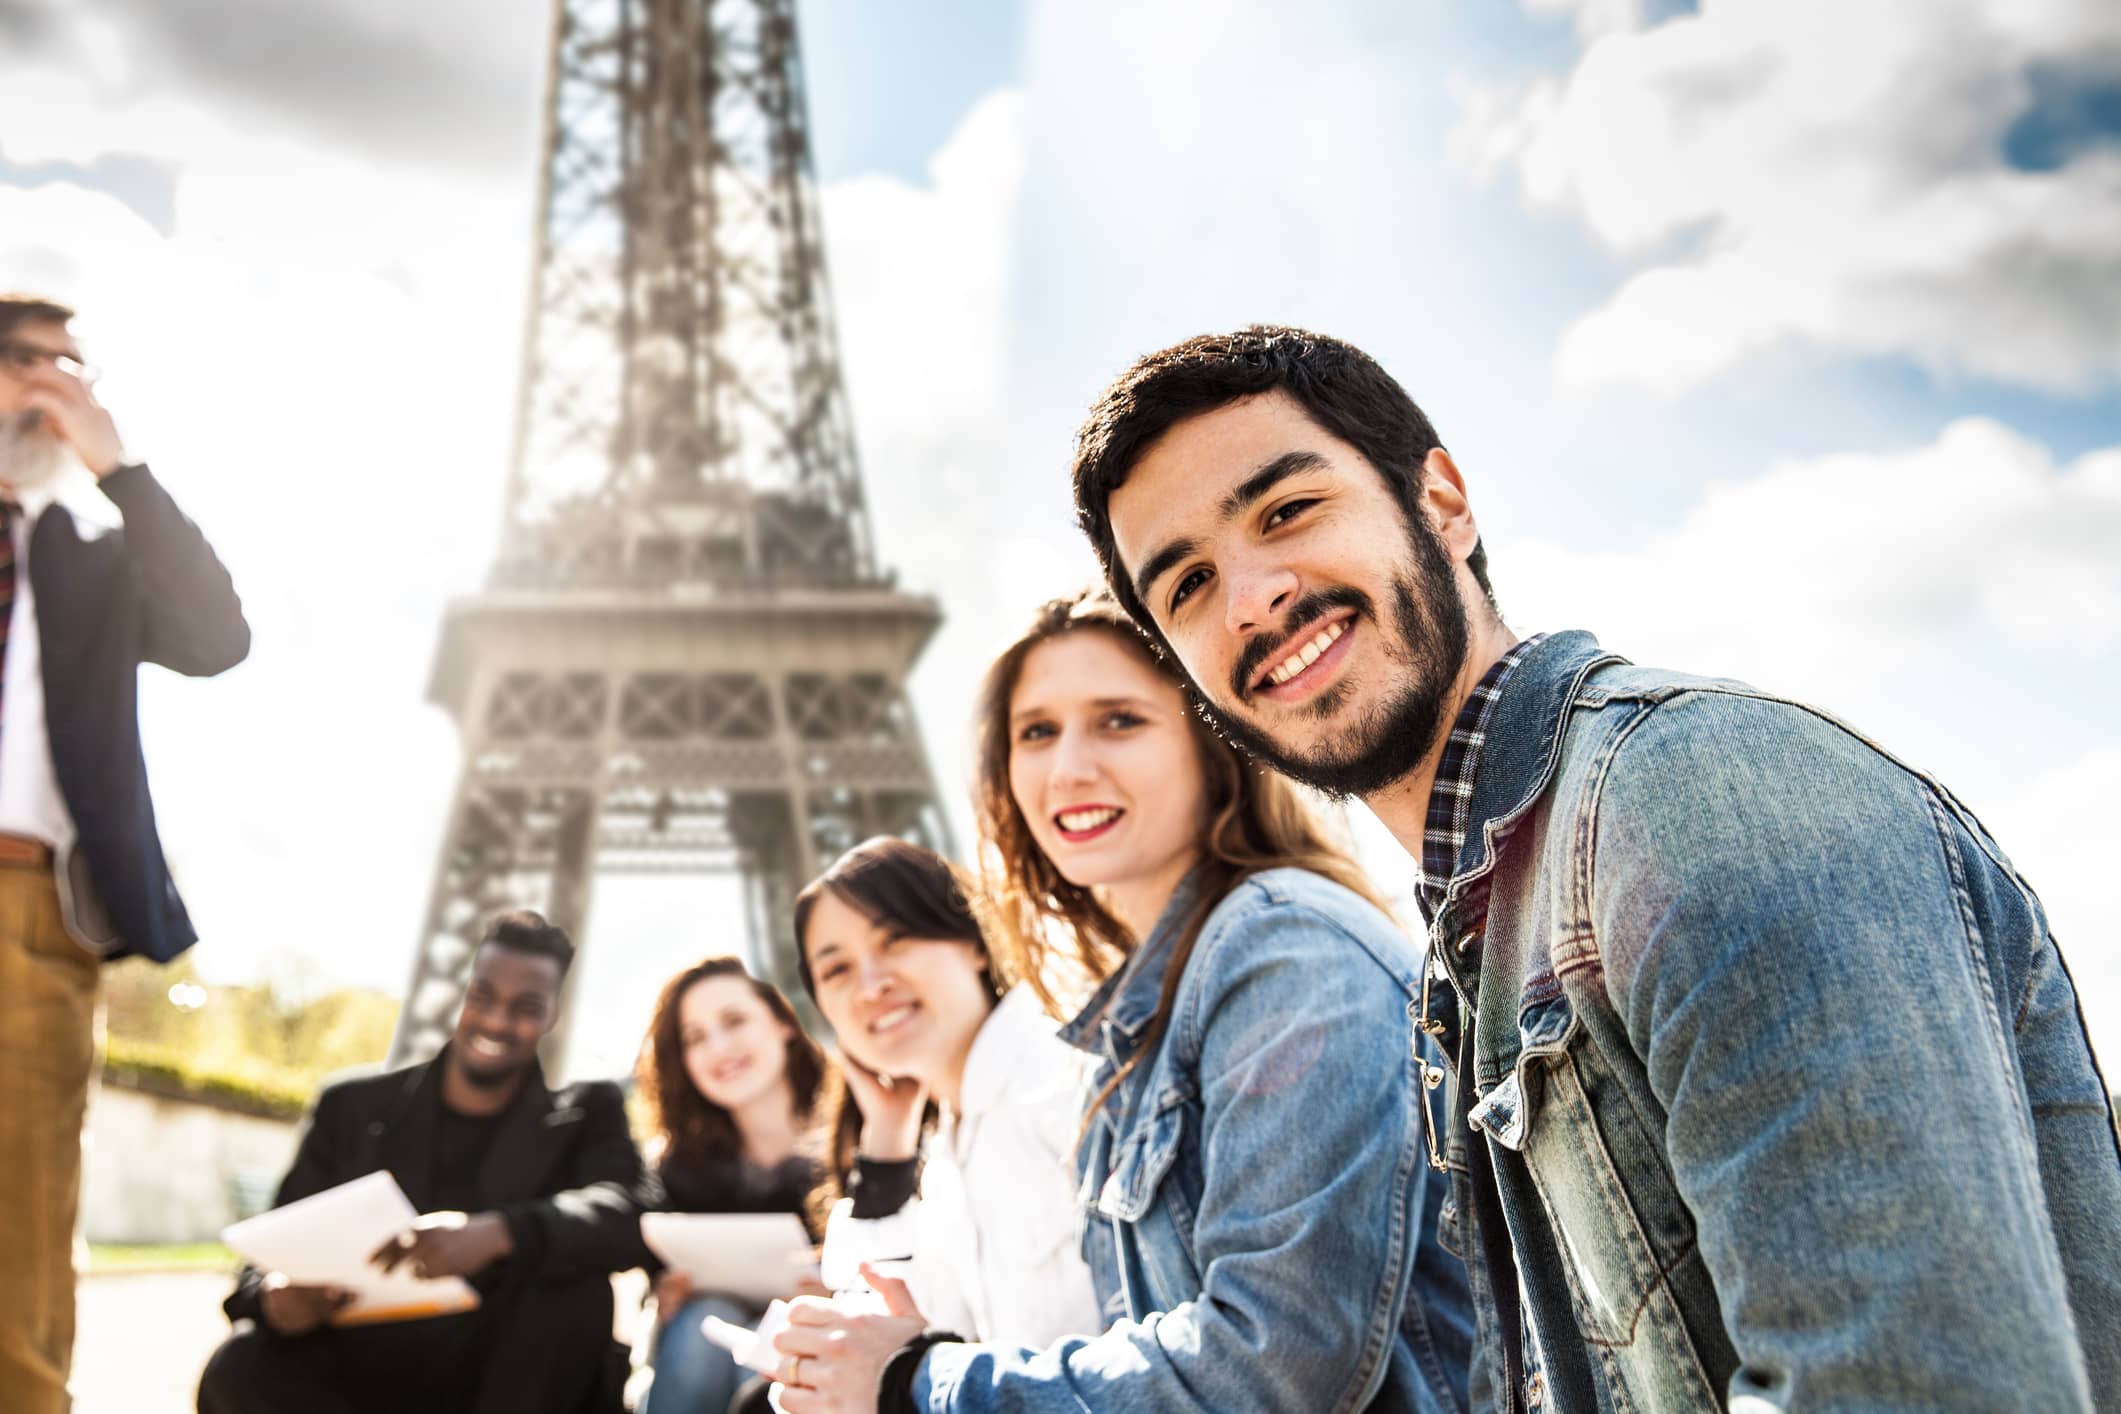 Image d'illustration : représentation de la diversité de la jeunesse devant la Tour Eiffel.